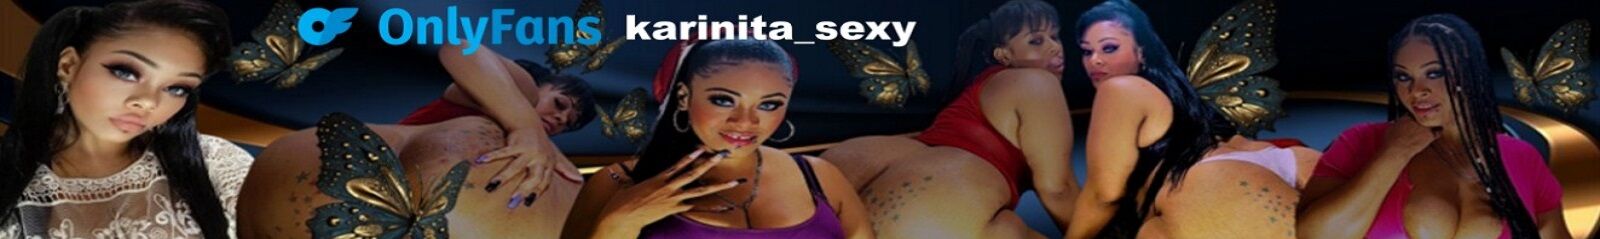 Karinita sexy